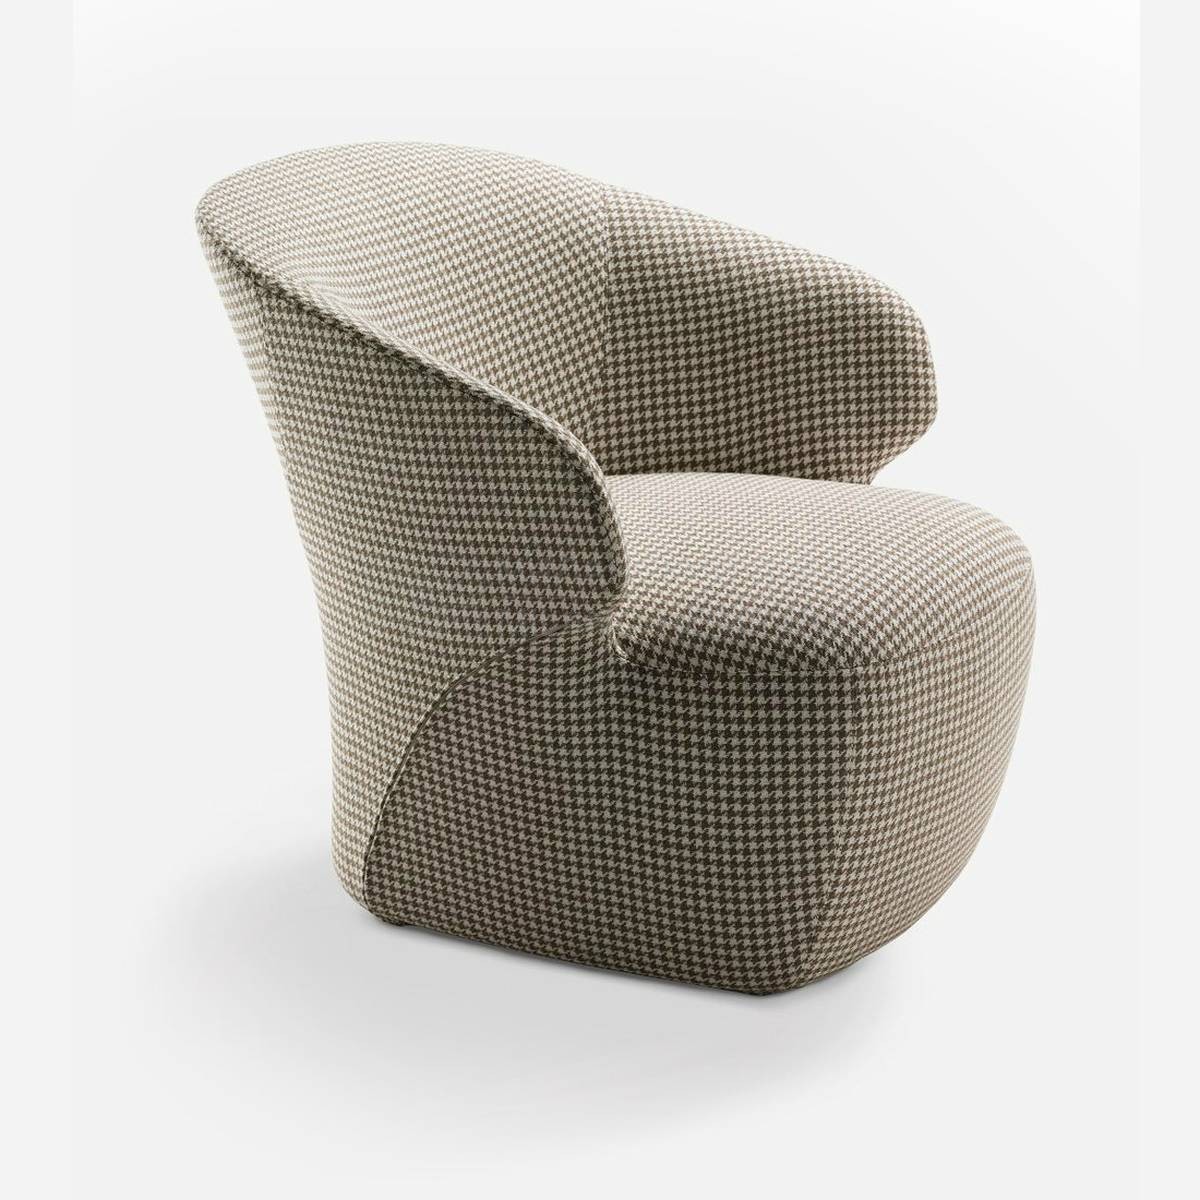 Круглое кресло Arom armchair из Италии фабрики ZANOTTA